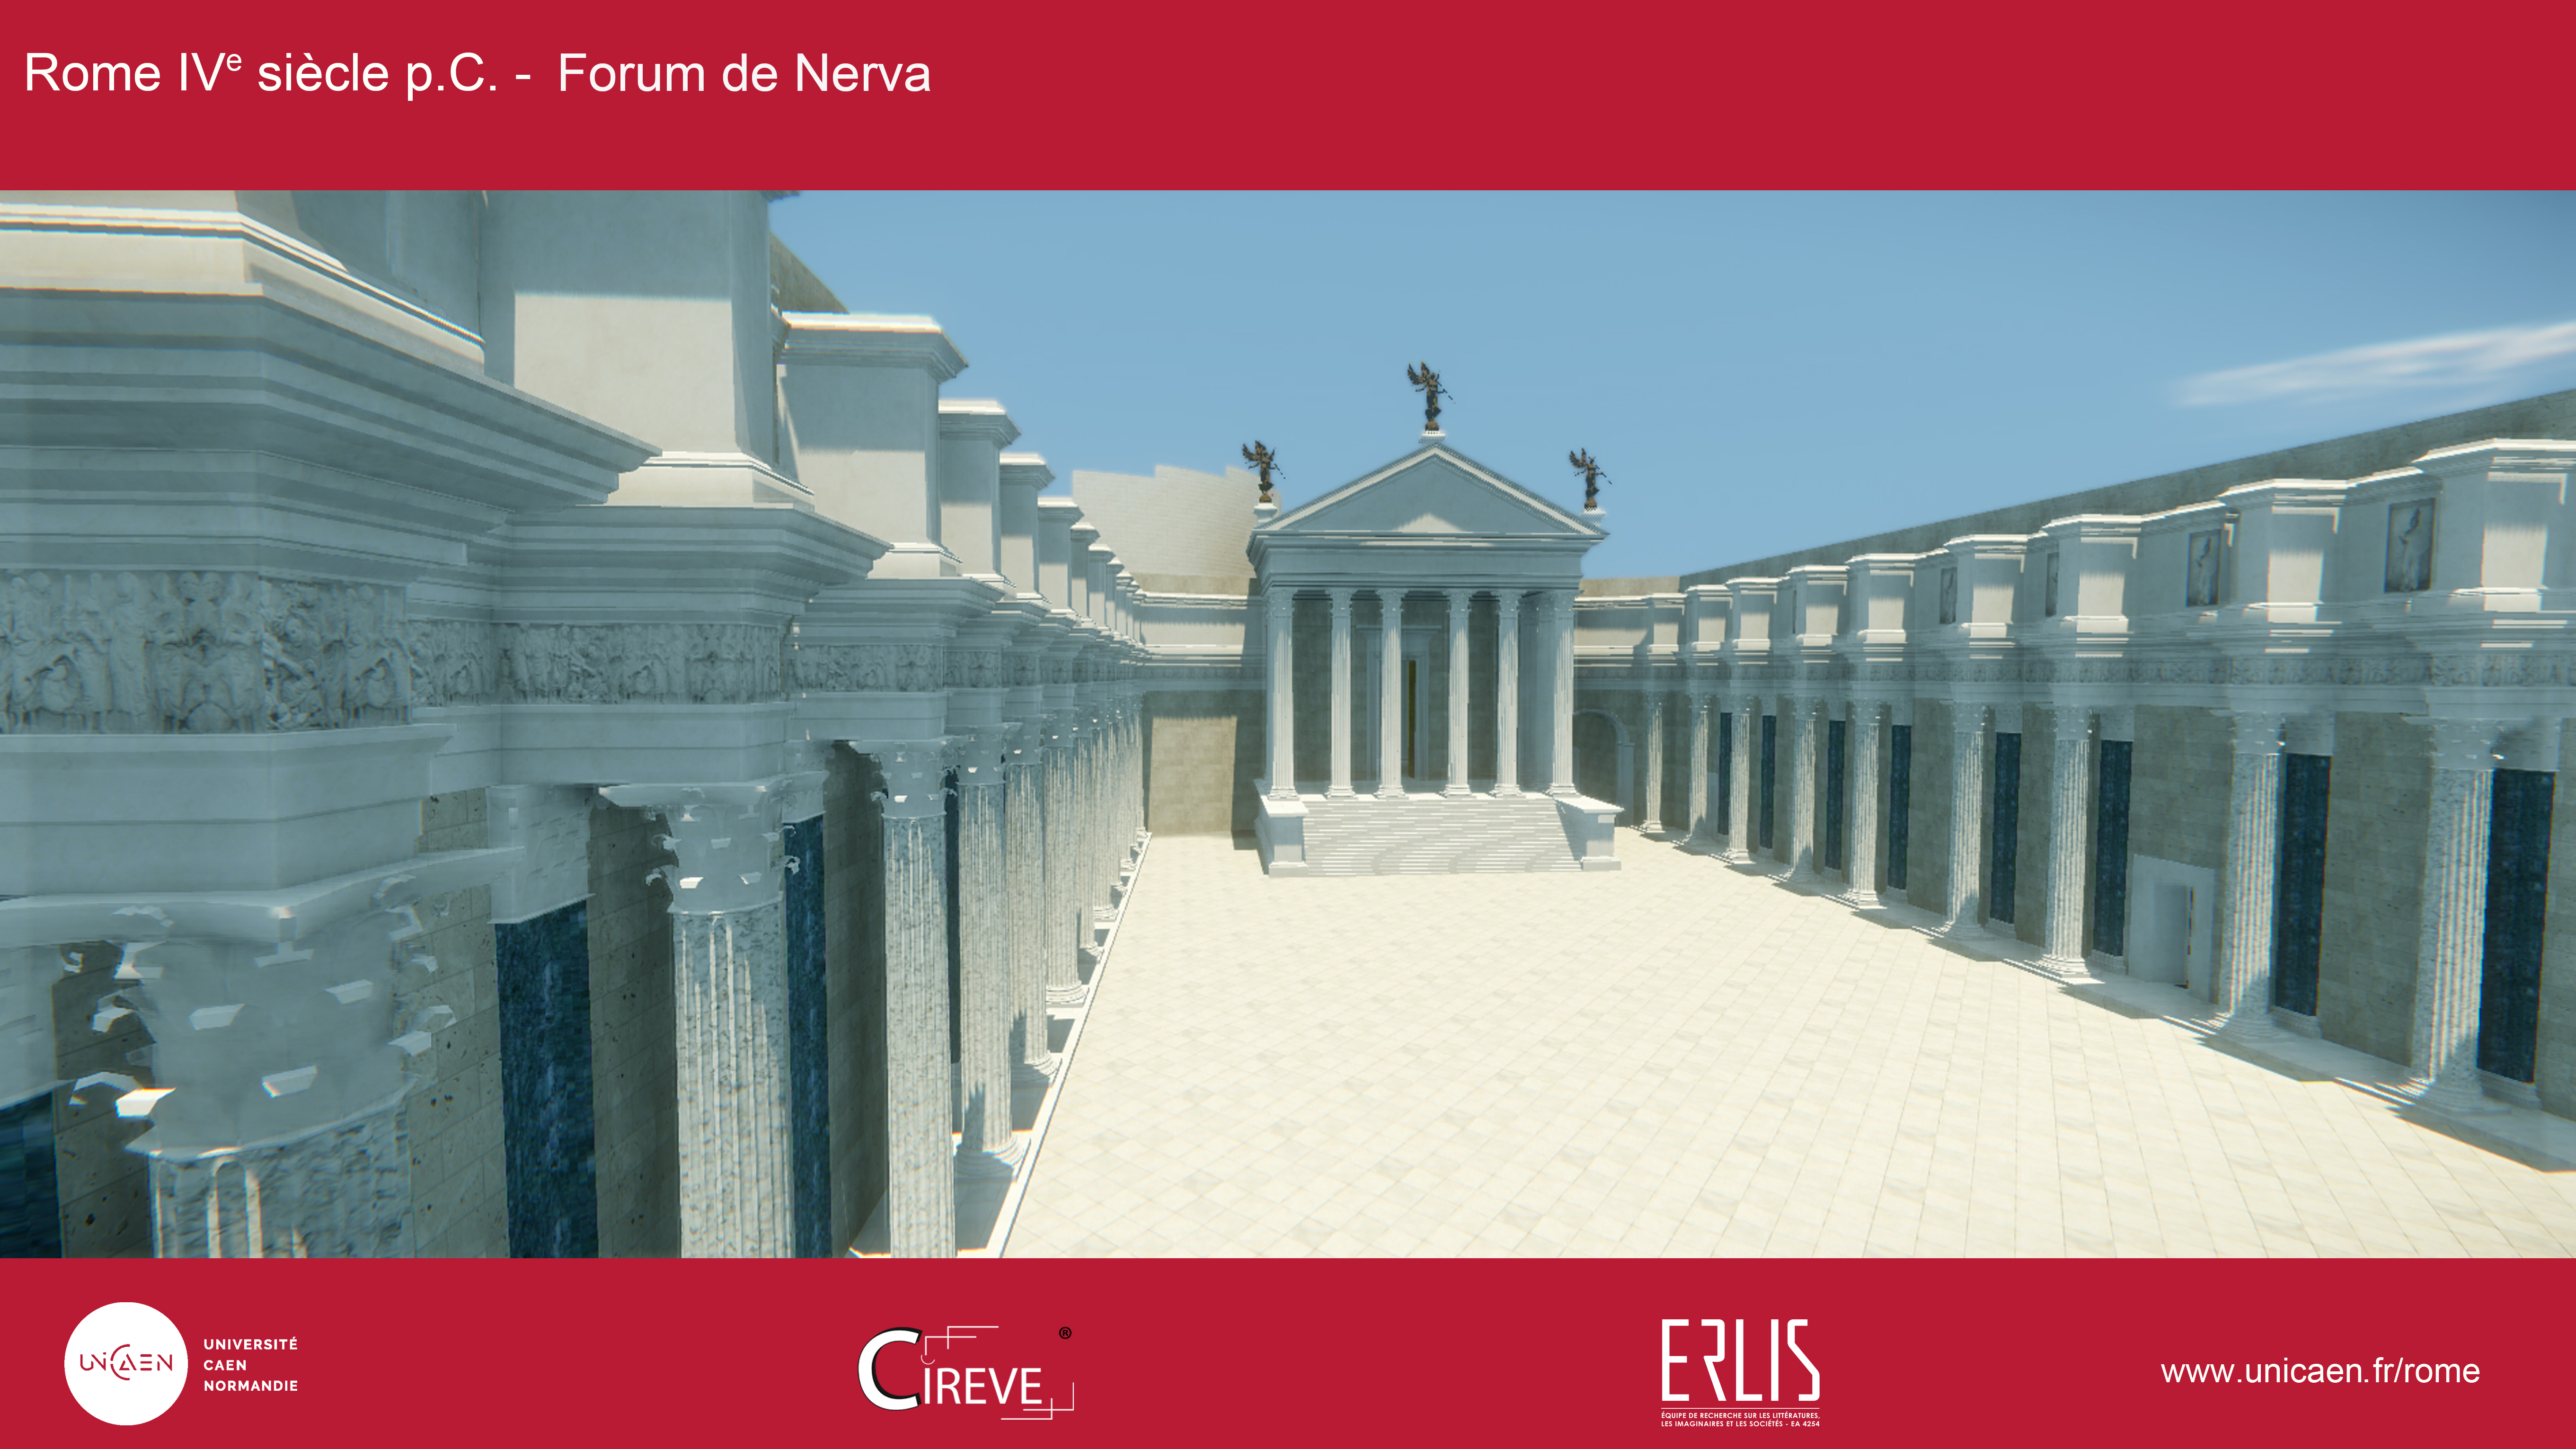 Forum de Nerva